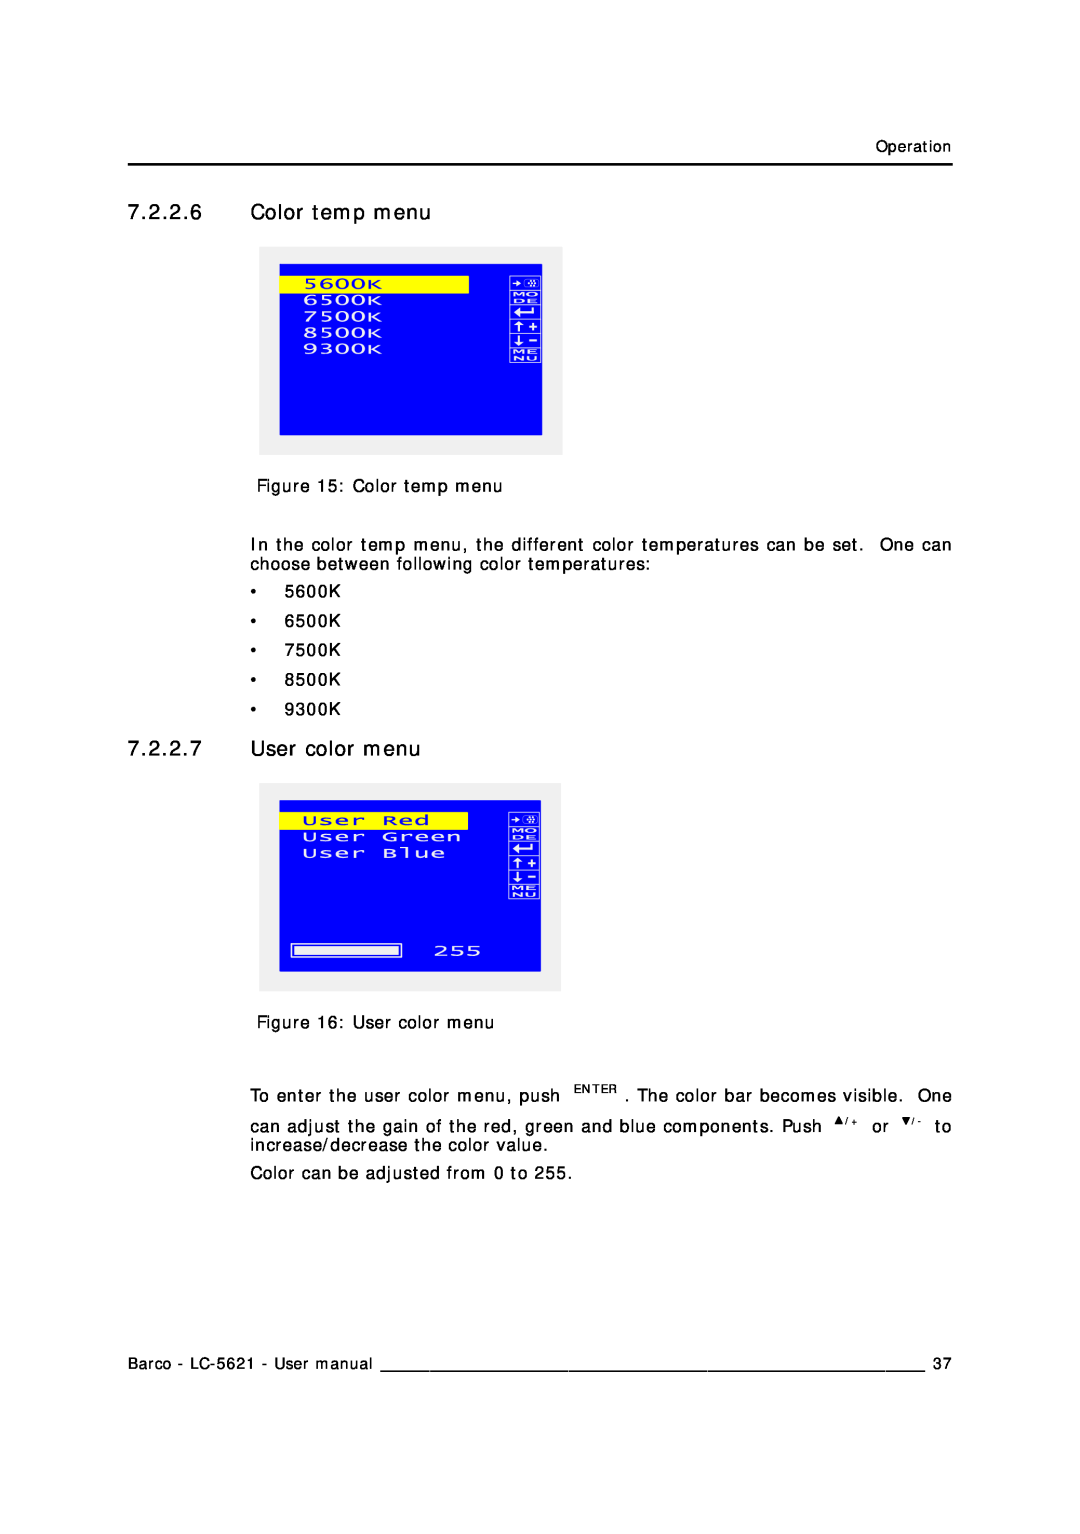 Barco LC-5621 user manual Color temp menu, User color menu 